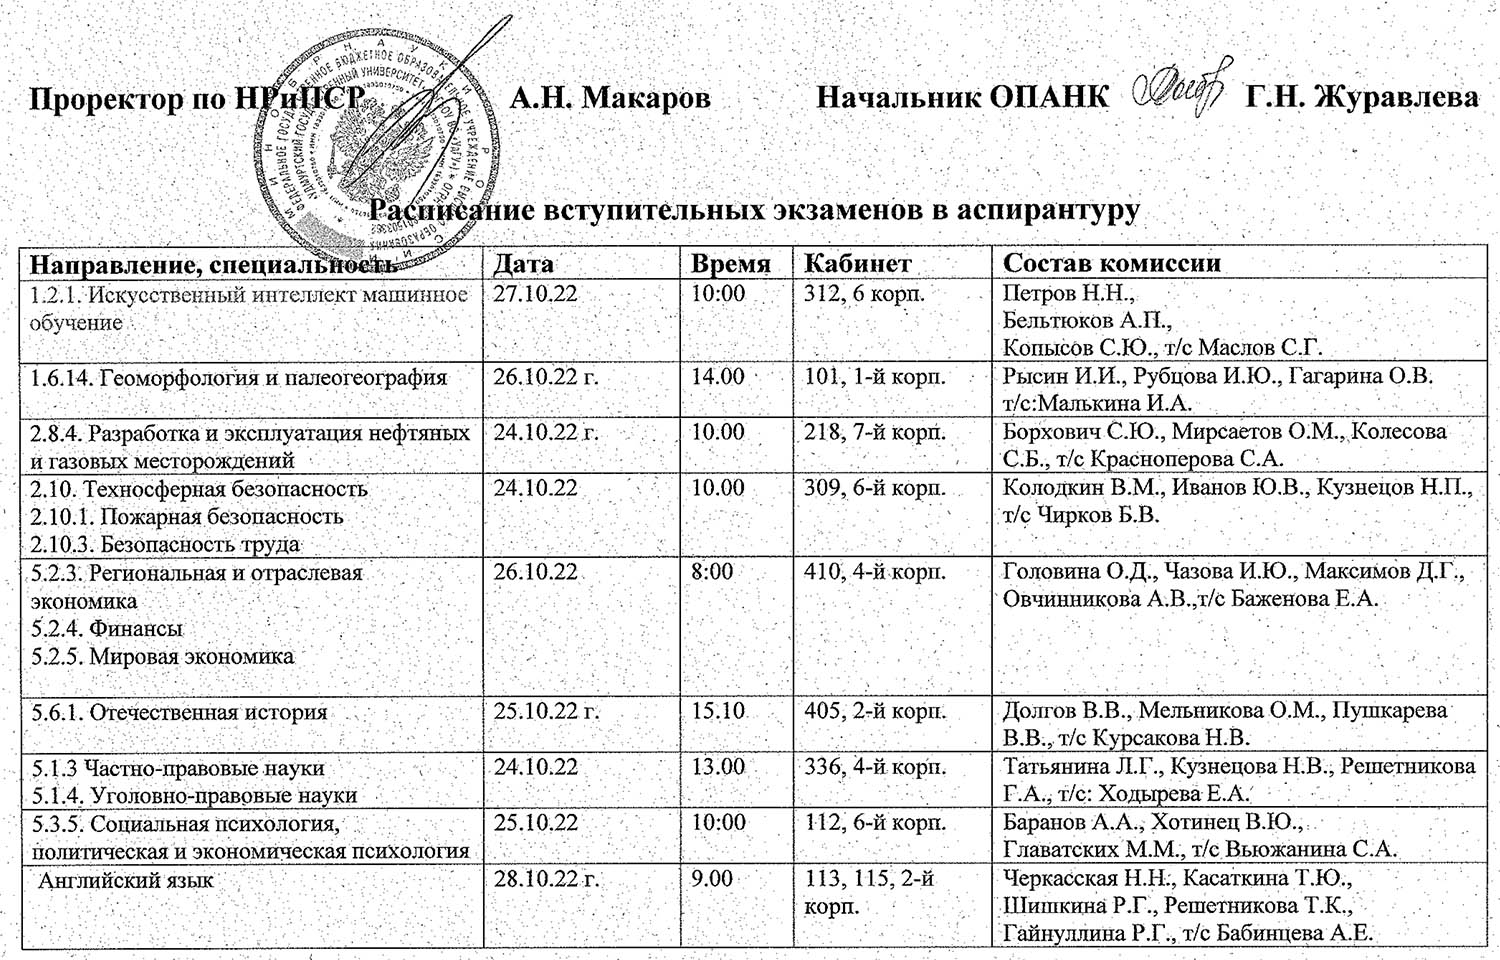 Расписание вступительных экзаменов в аспирантуру 2022 г.